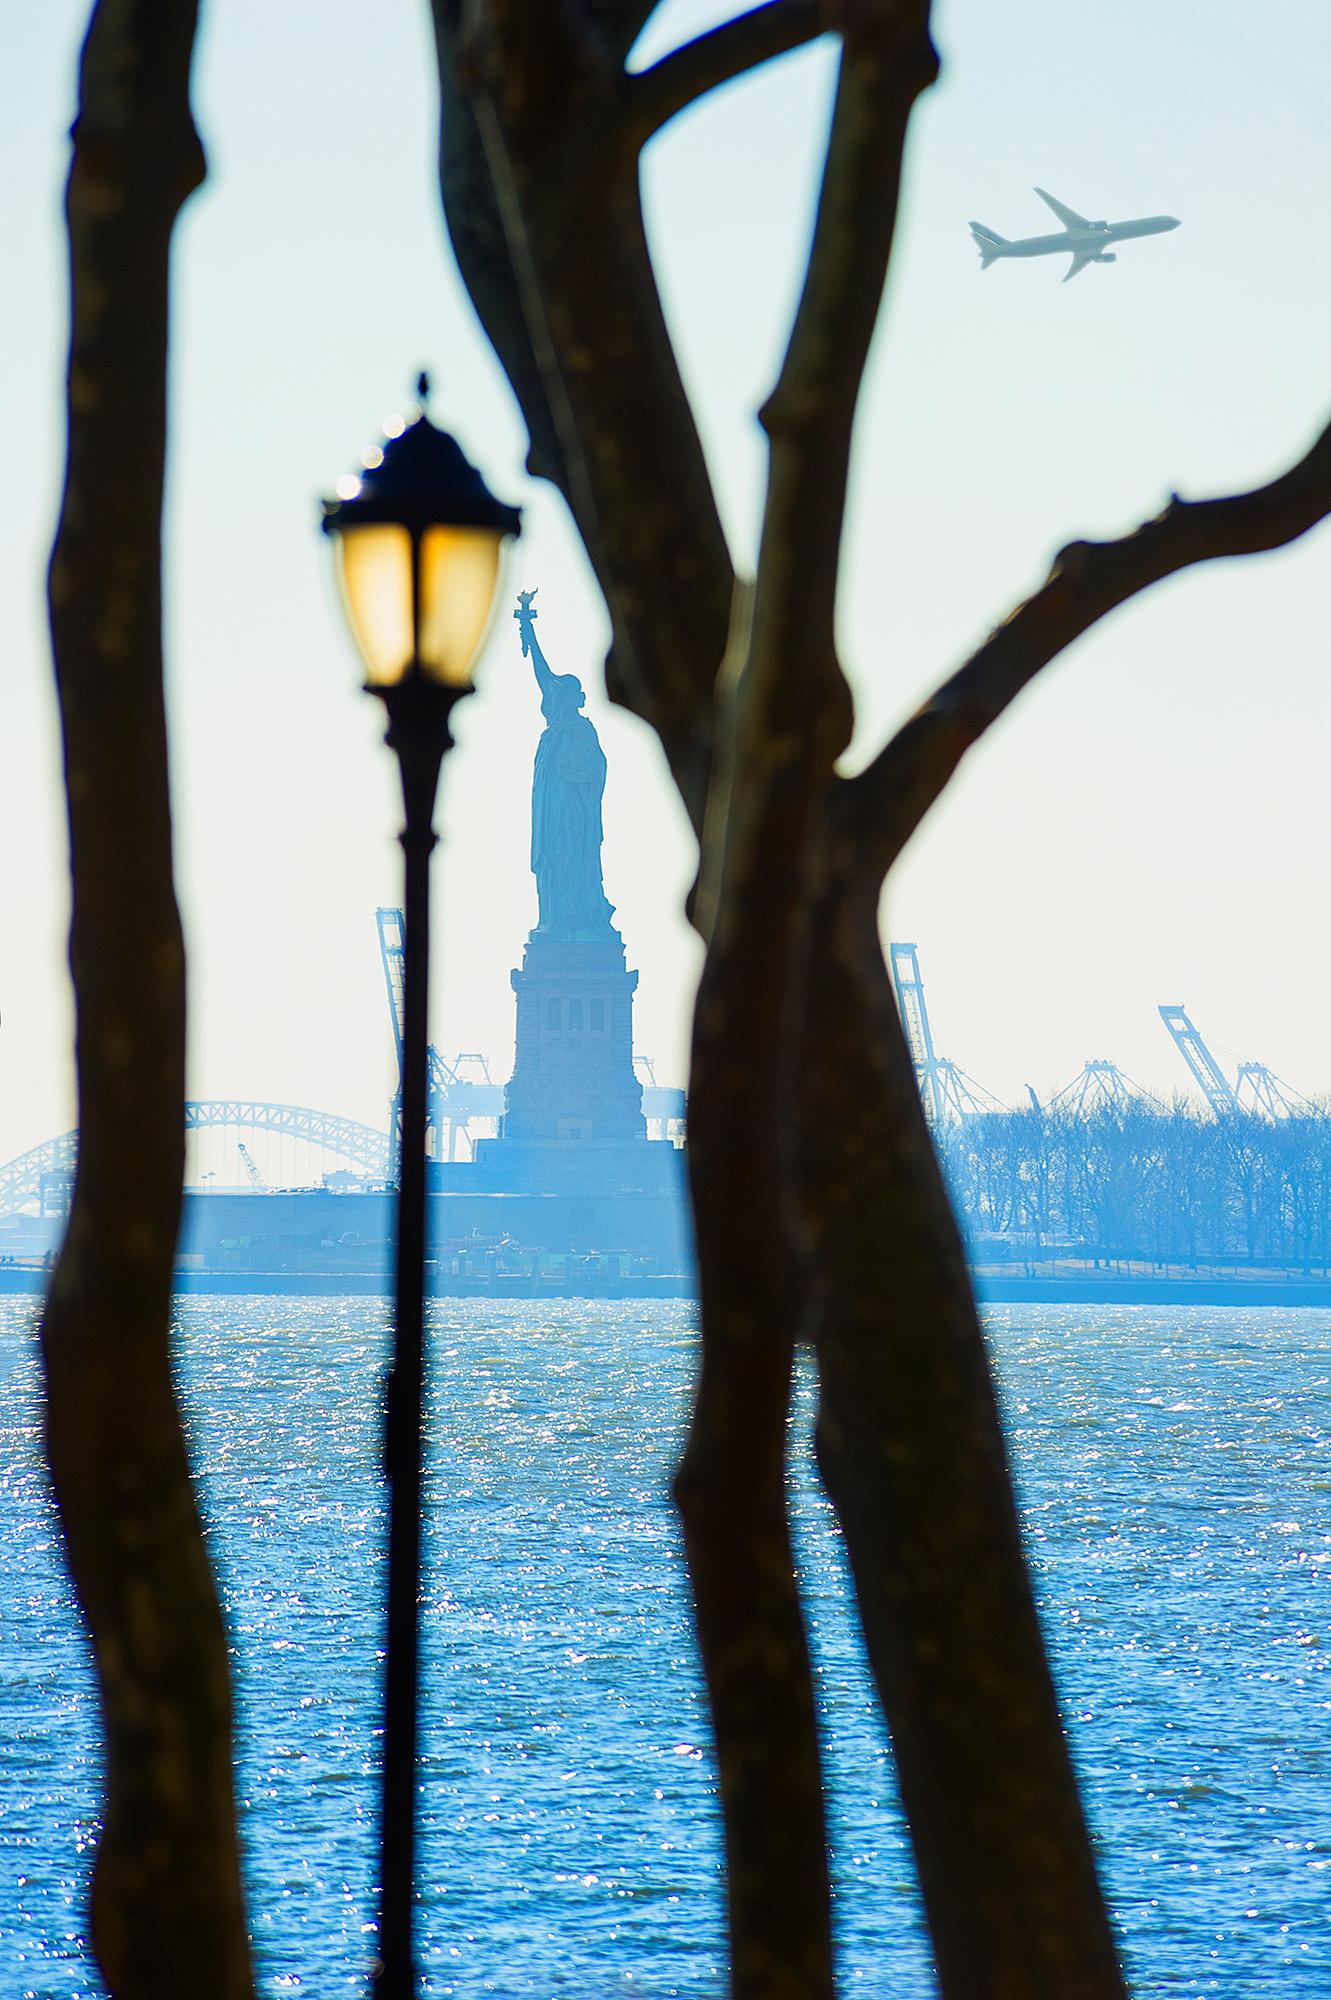 Liberty- Freiheitsstatue  Gerahmt von Bäumen und Straßenlampe im Battery Park,  New York  – Photograph von Mitchell Funk